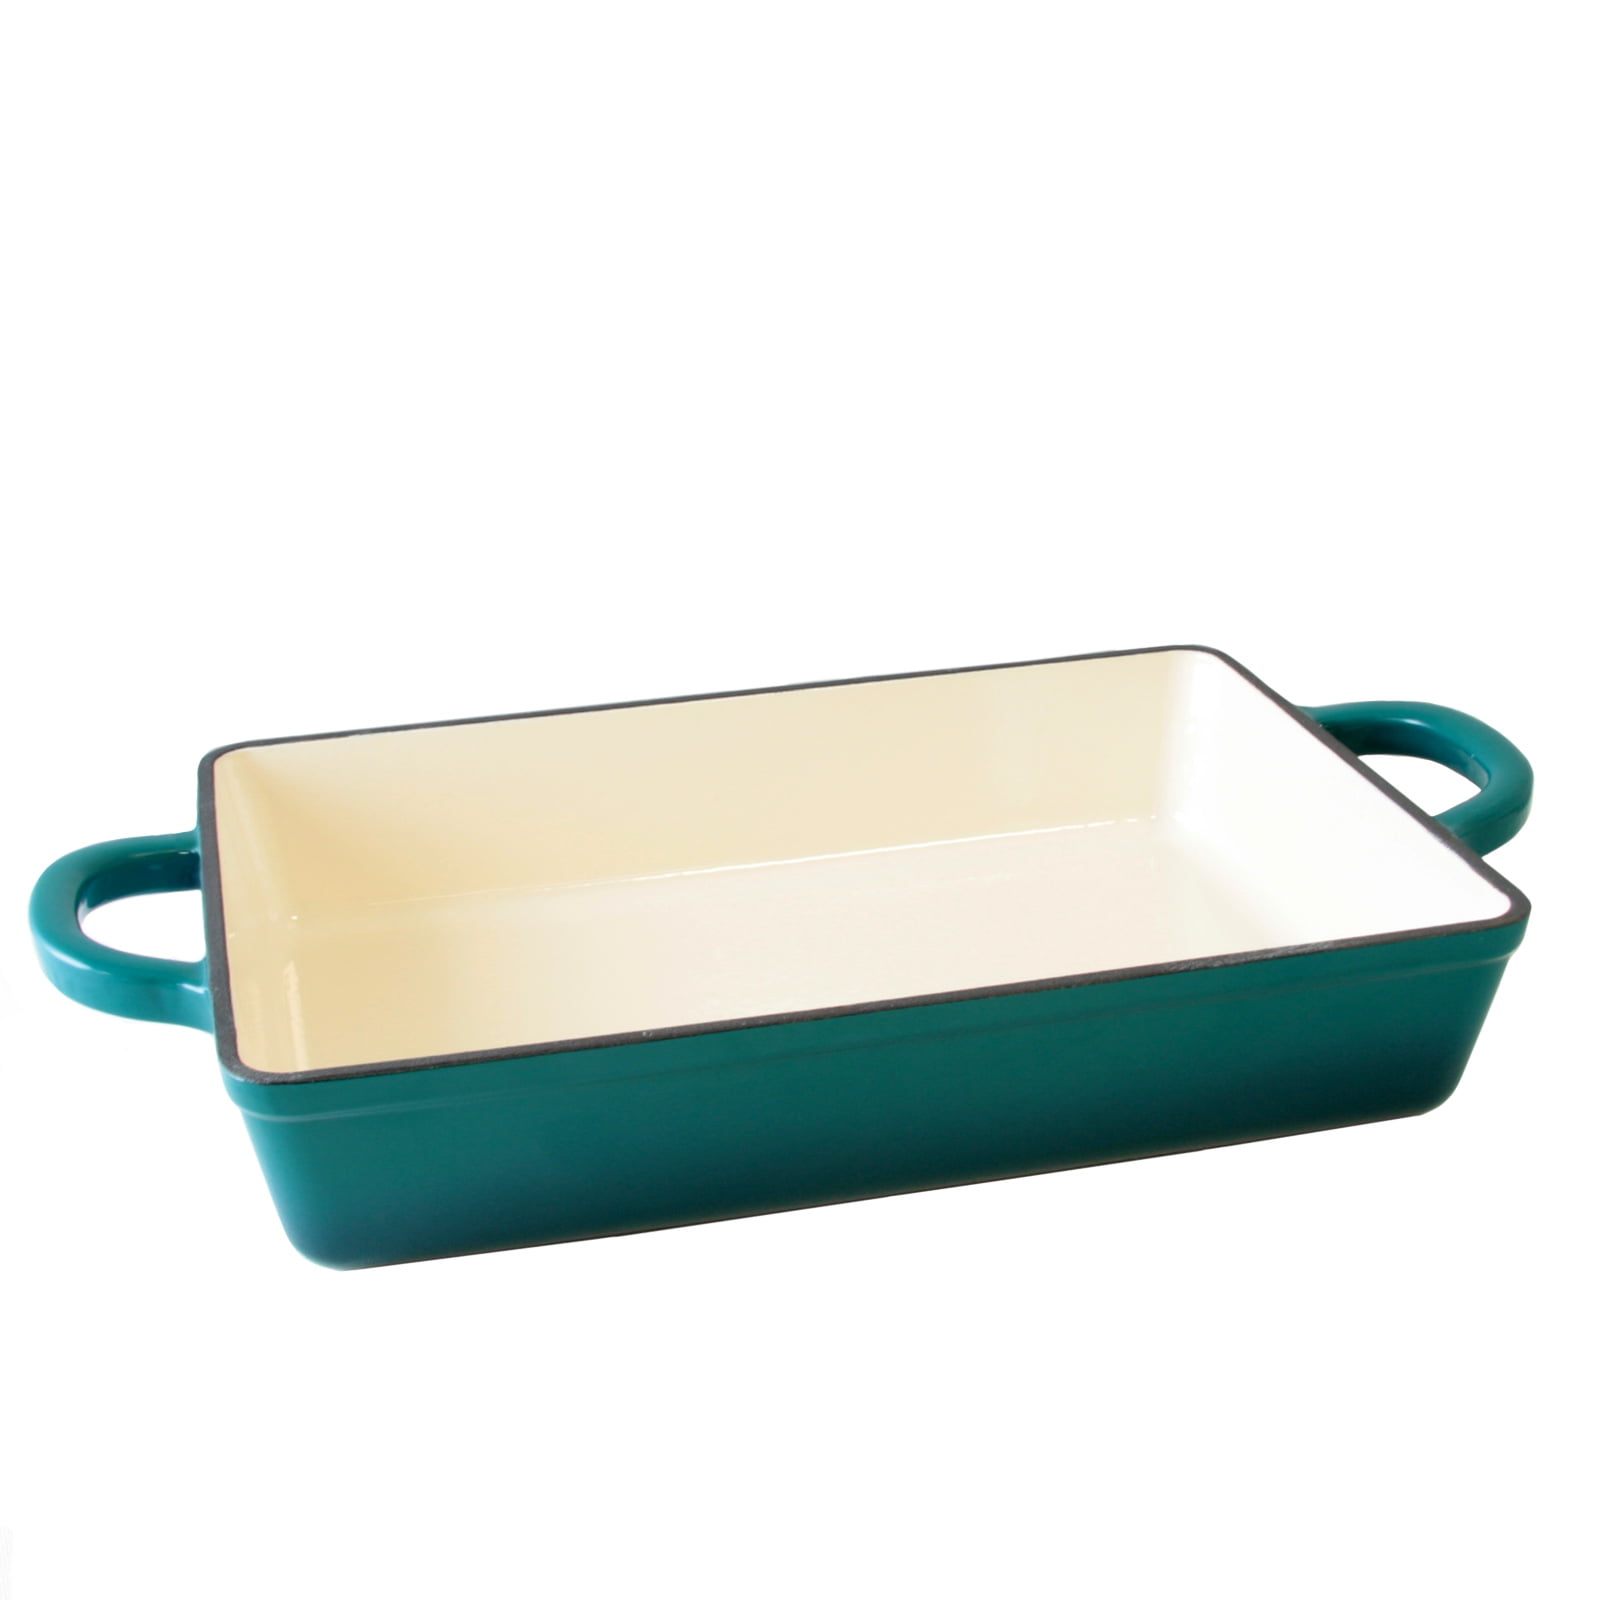 Details about   Crock Pot Artisan Aqua Blue 13" Rectangular Enameled Cast Iron Lasagna Bake Pan 